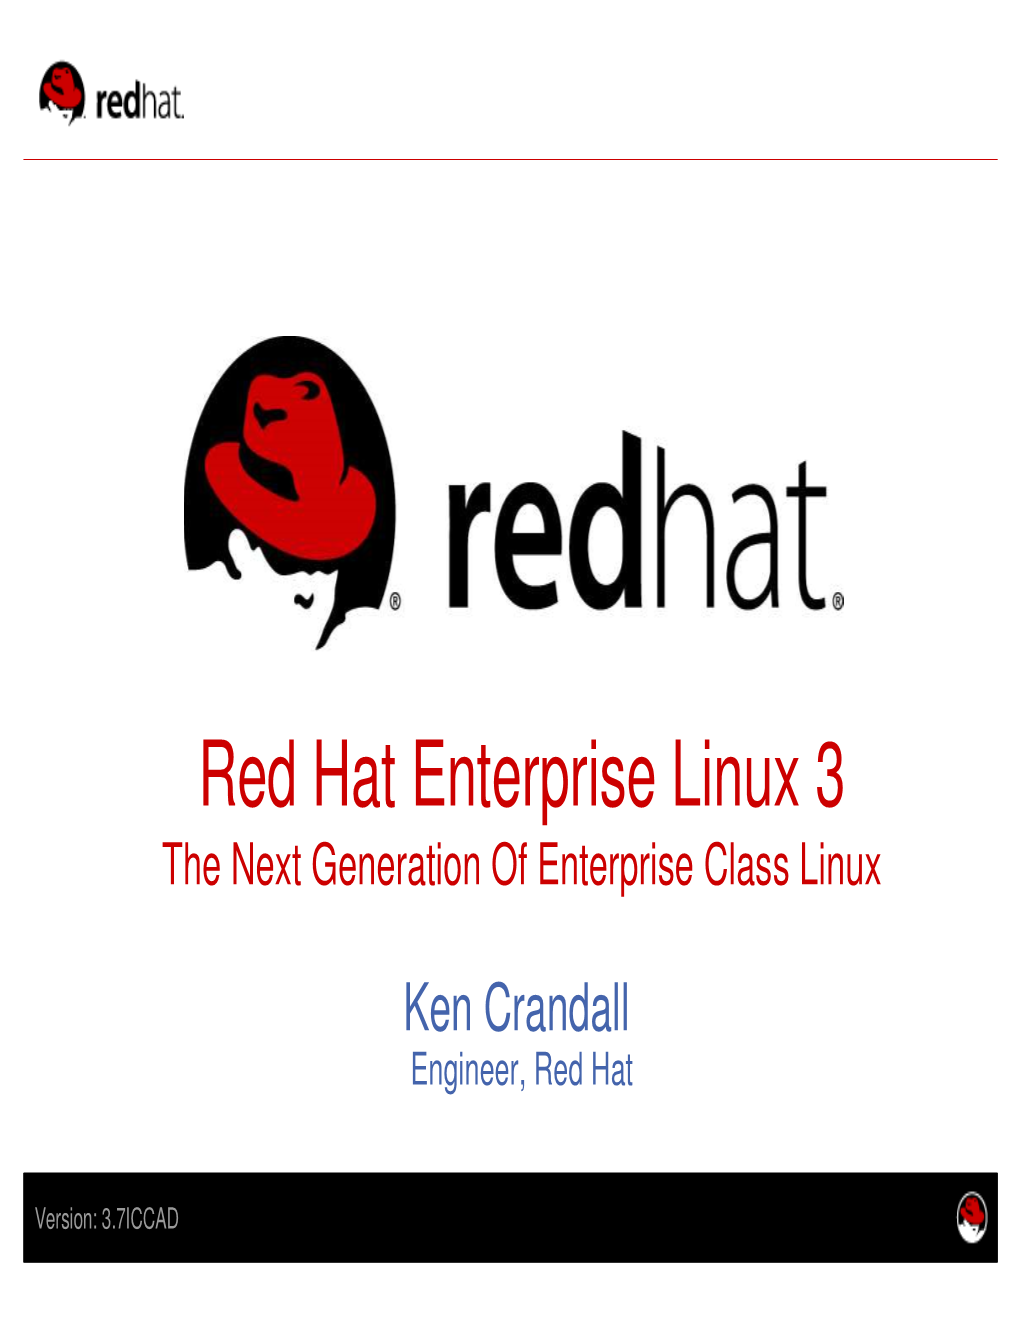 Red Hat Enterprise Linux 3 the Next Generation of Enterprise Class Linux